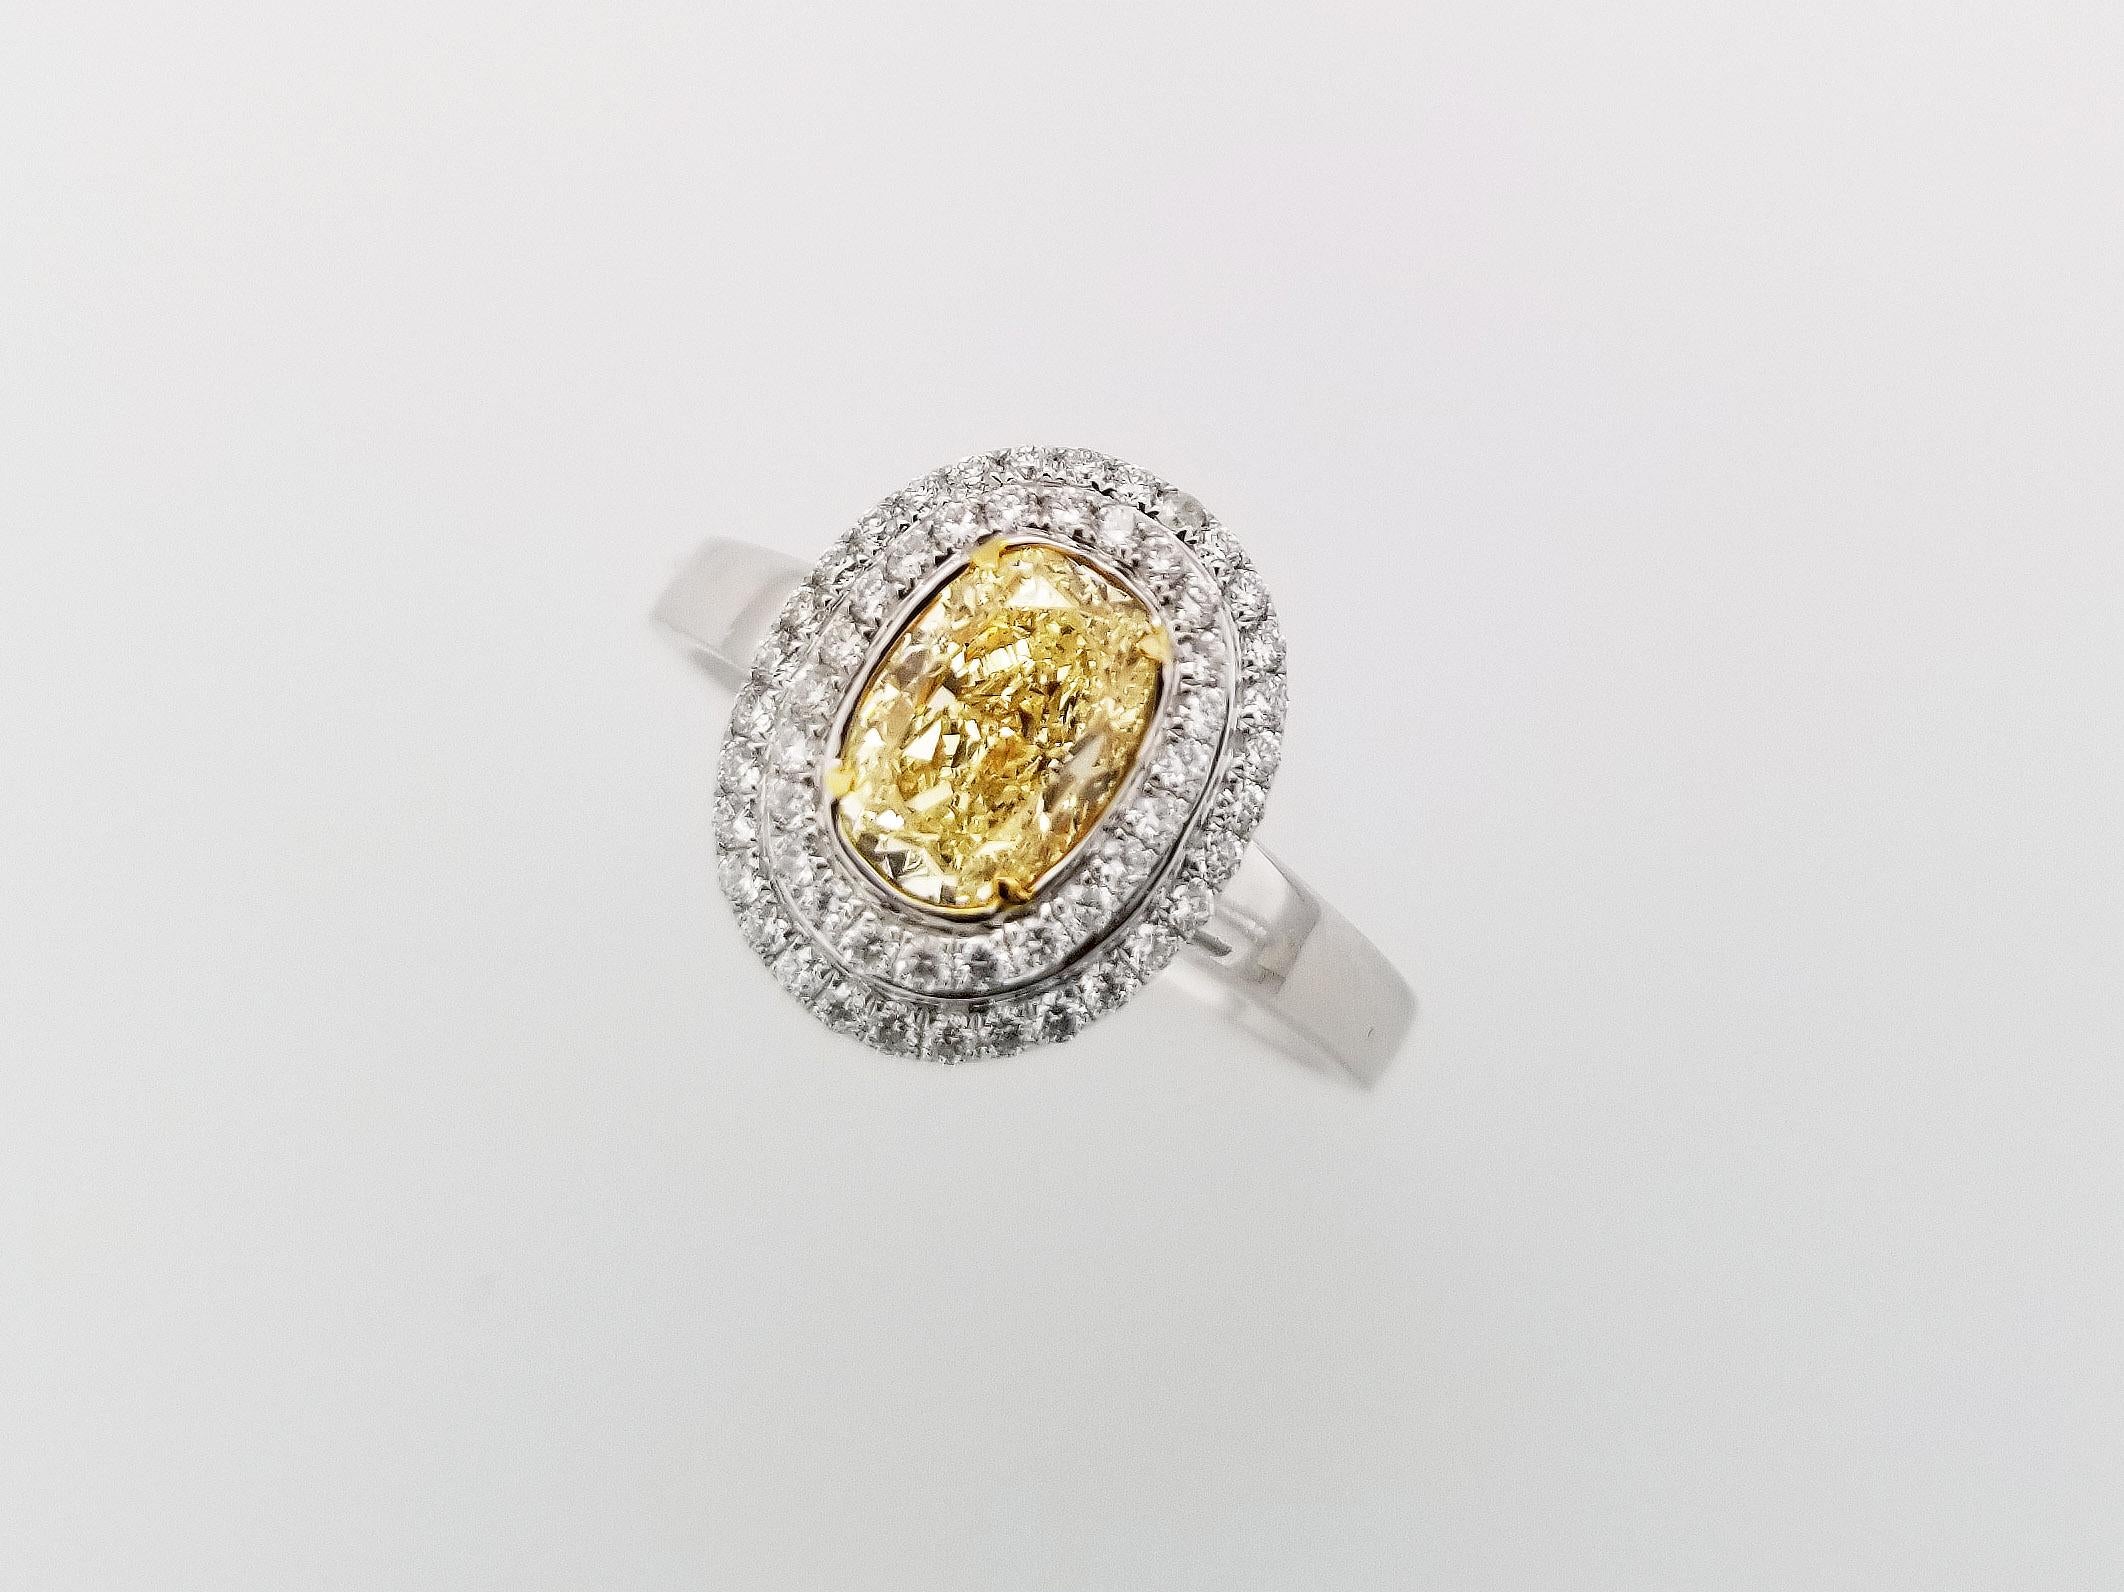 Geschenke zum Muttertag!

Ein zeitloser Erbstückring mit 1,20 Karat Fancy Light Yellow Diamond als Mittelstein, umgeben von zwei Reihen runder weißer Diamanten, TCW 0,29. Der Mittelstein hat eine Reinheit von SI1 und das 18k Weißgoldband kann auf